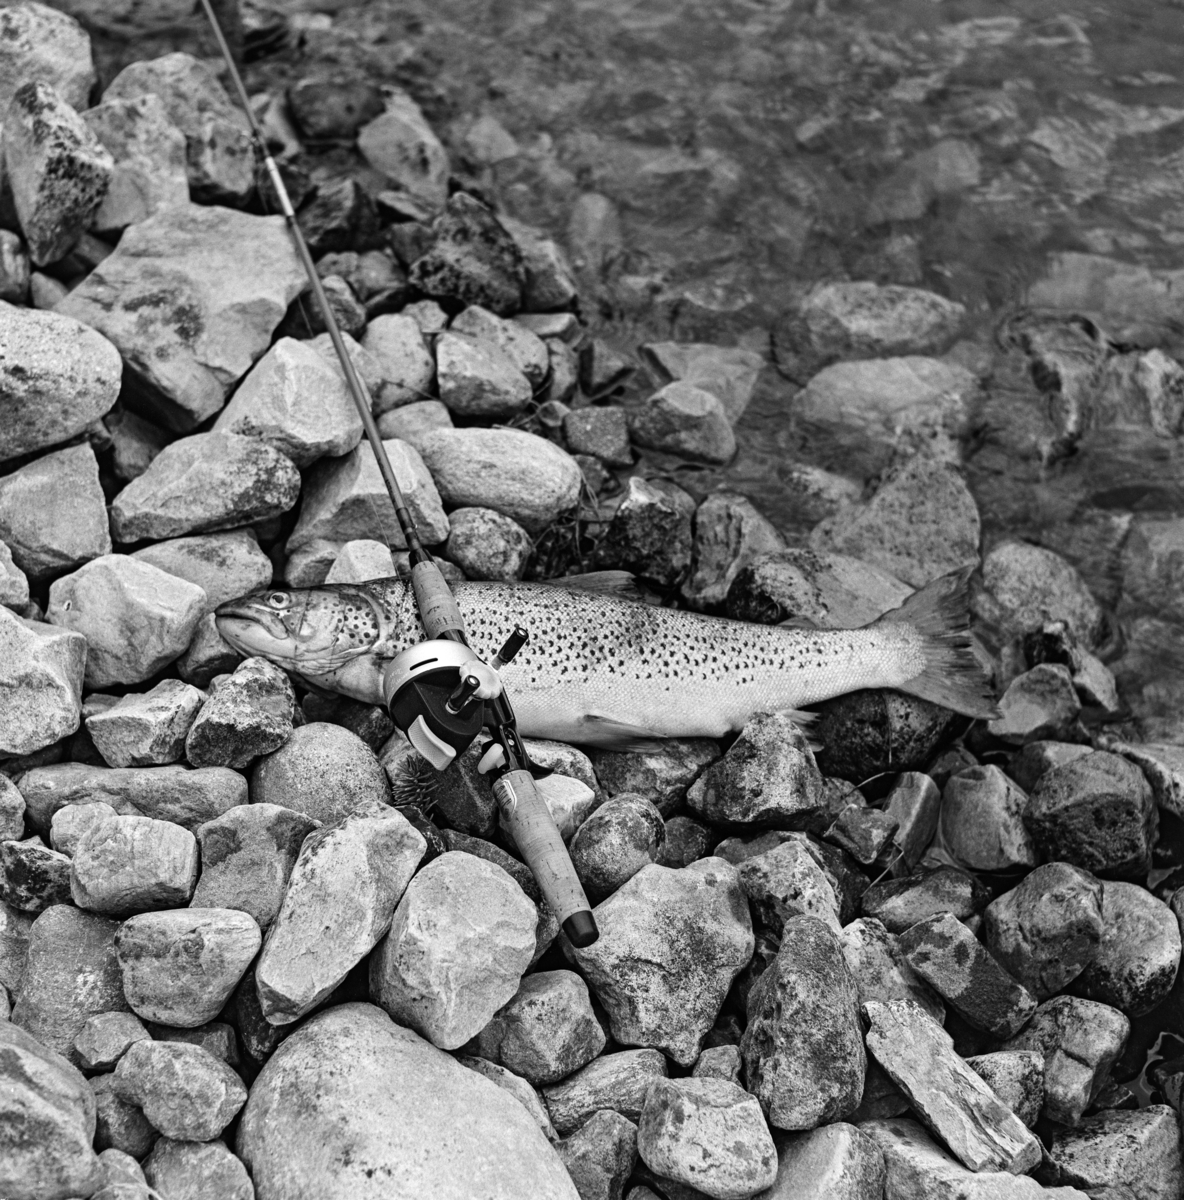 En ørret på 1, 7 kilo som ble tatt i Sennsjøen i Nordre Trysil i Hedmark i 1962.  Fisken er fotografert på et steinete underlag i strandsonen, sammen med slukstanga med lukket haspelsnelle som den ble fanget med.  Sportsfiskeren som tok denne fisken var sannsynligvis identisk med fotografen, Kjell Søgård. 